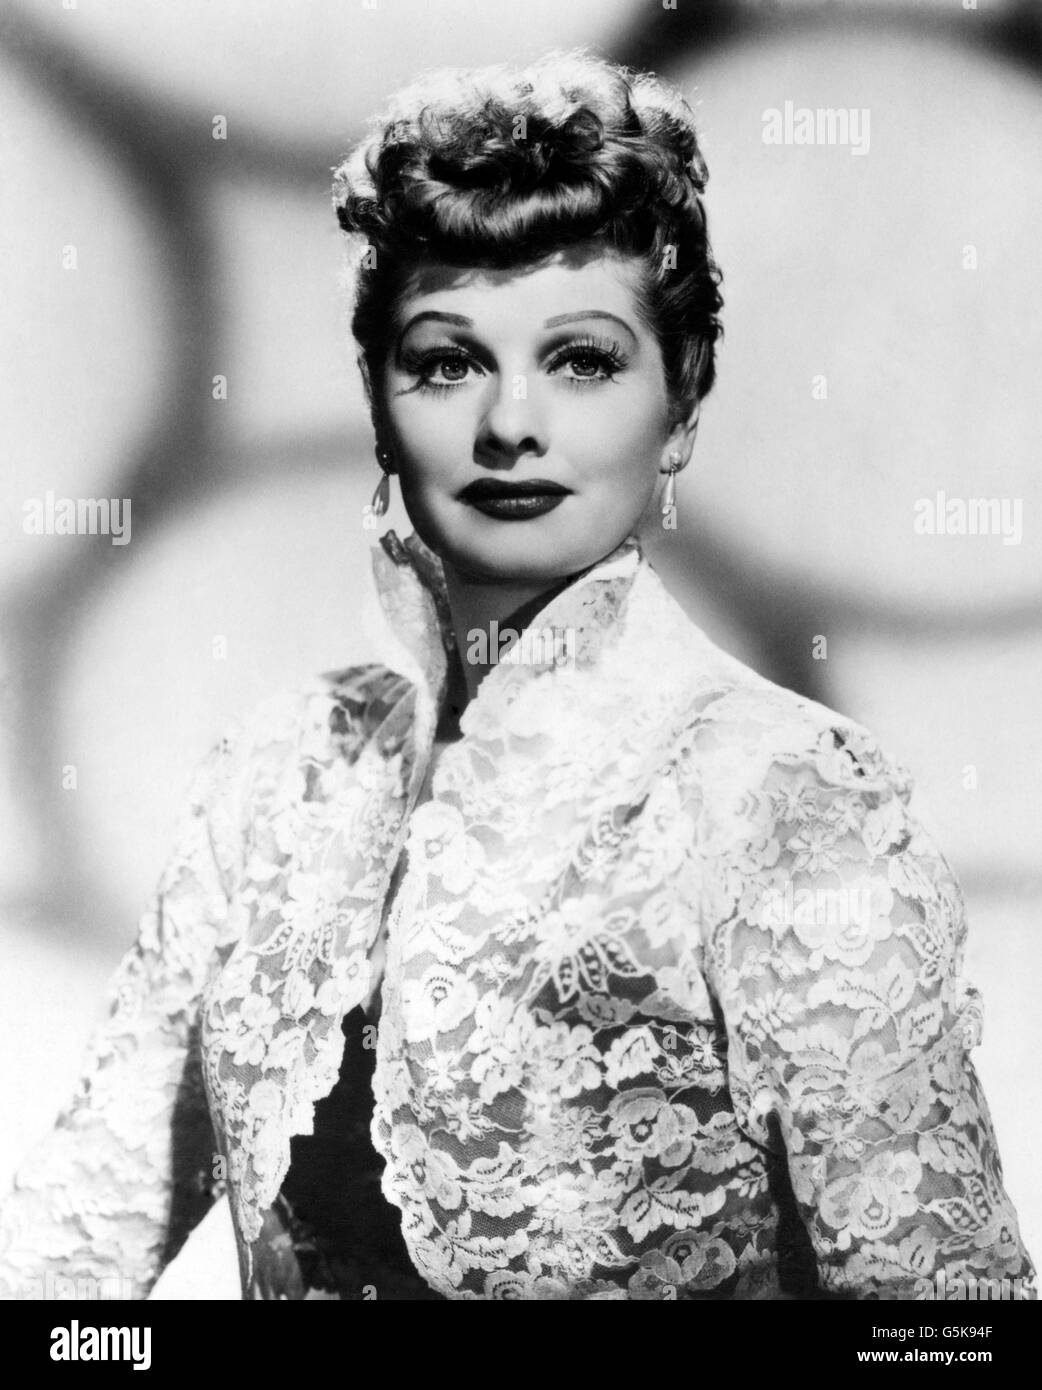 Entertainment - Actress Lucille Ball. American actress Lucille Ball. Stock Photo